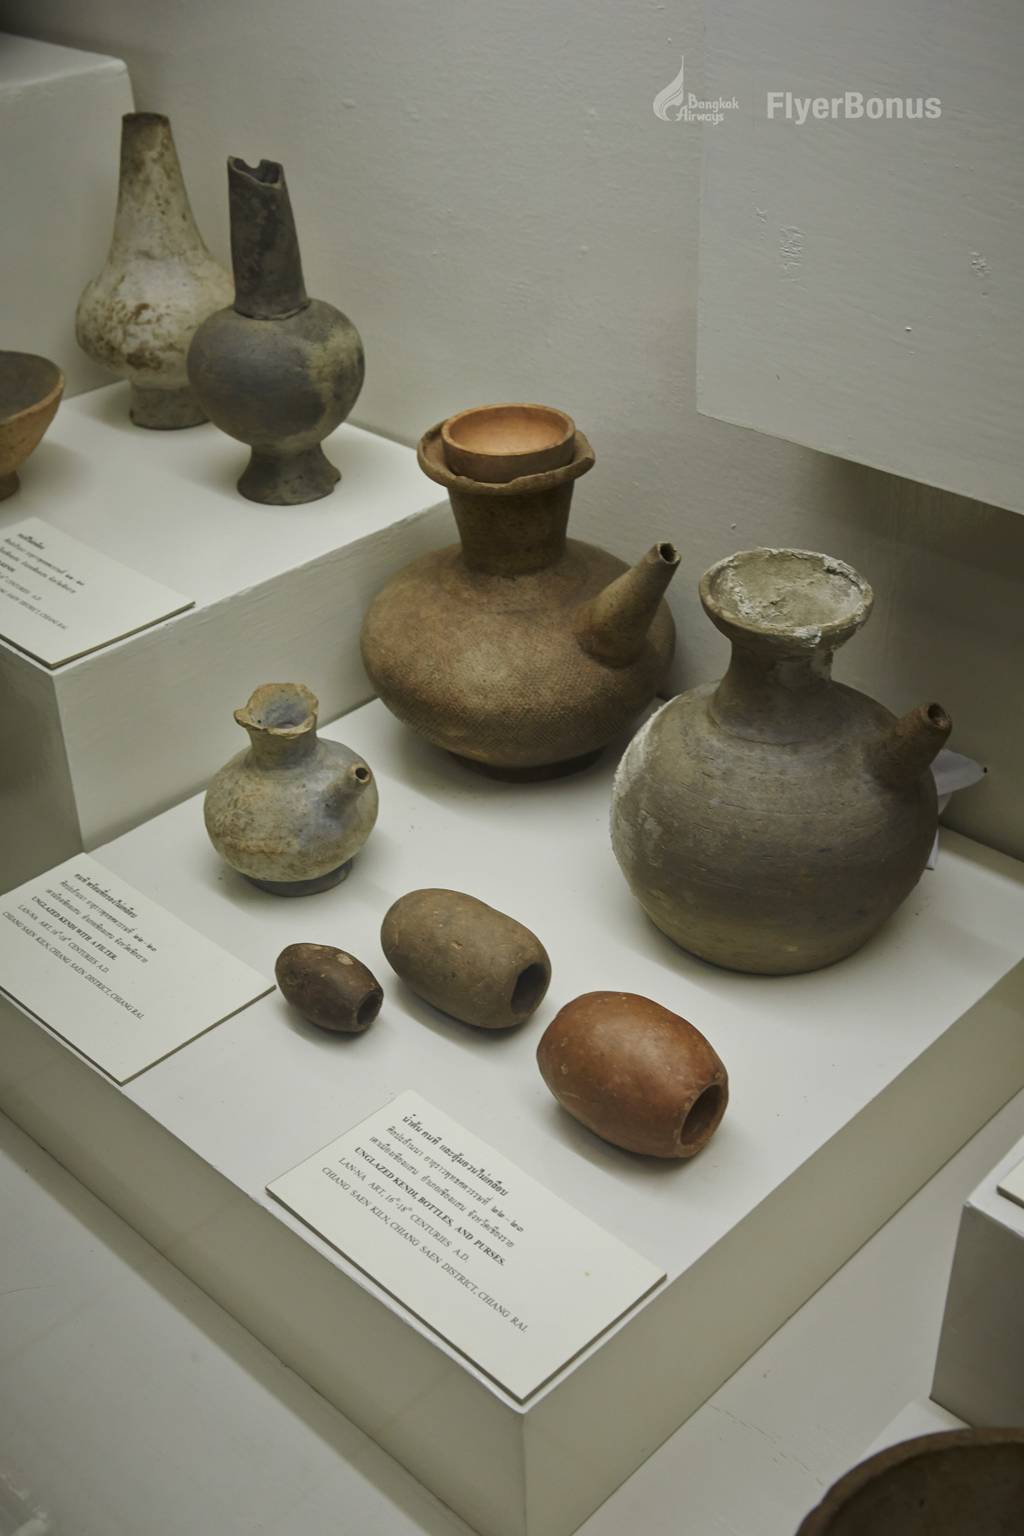 วันสุดท้ายของทริป ชมโบราณวัตถุล้ำค่า ที่พิพิธภัณฑ์สถานแห่งชาติเชียงแสน